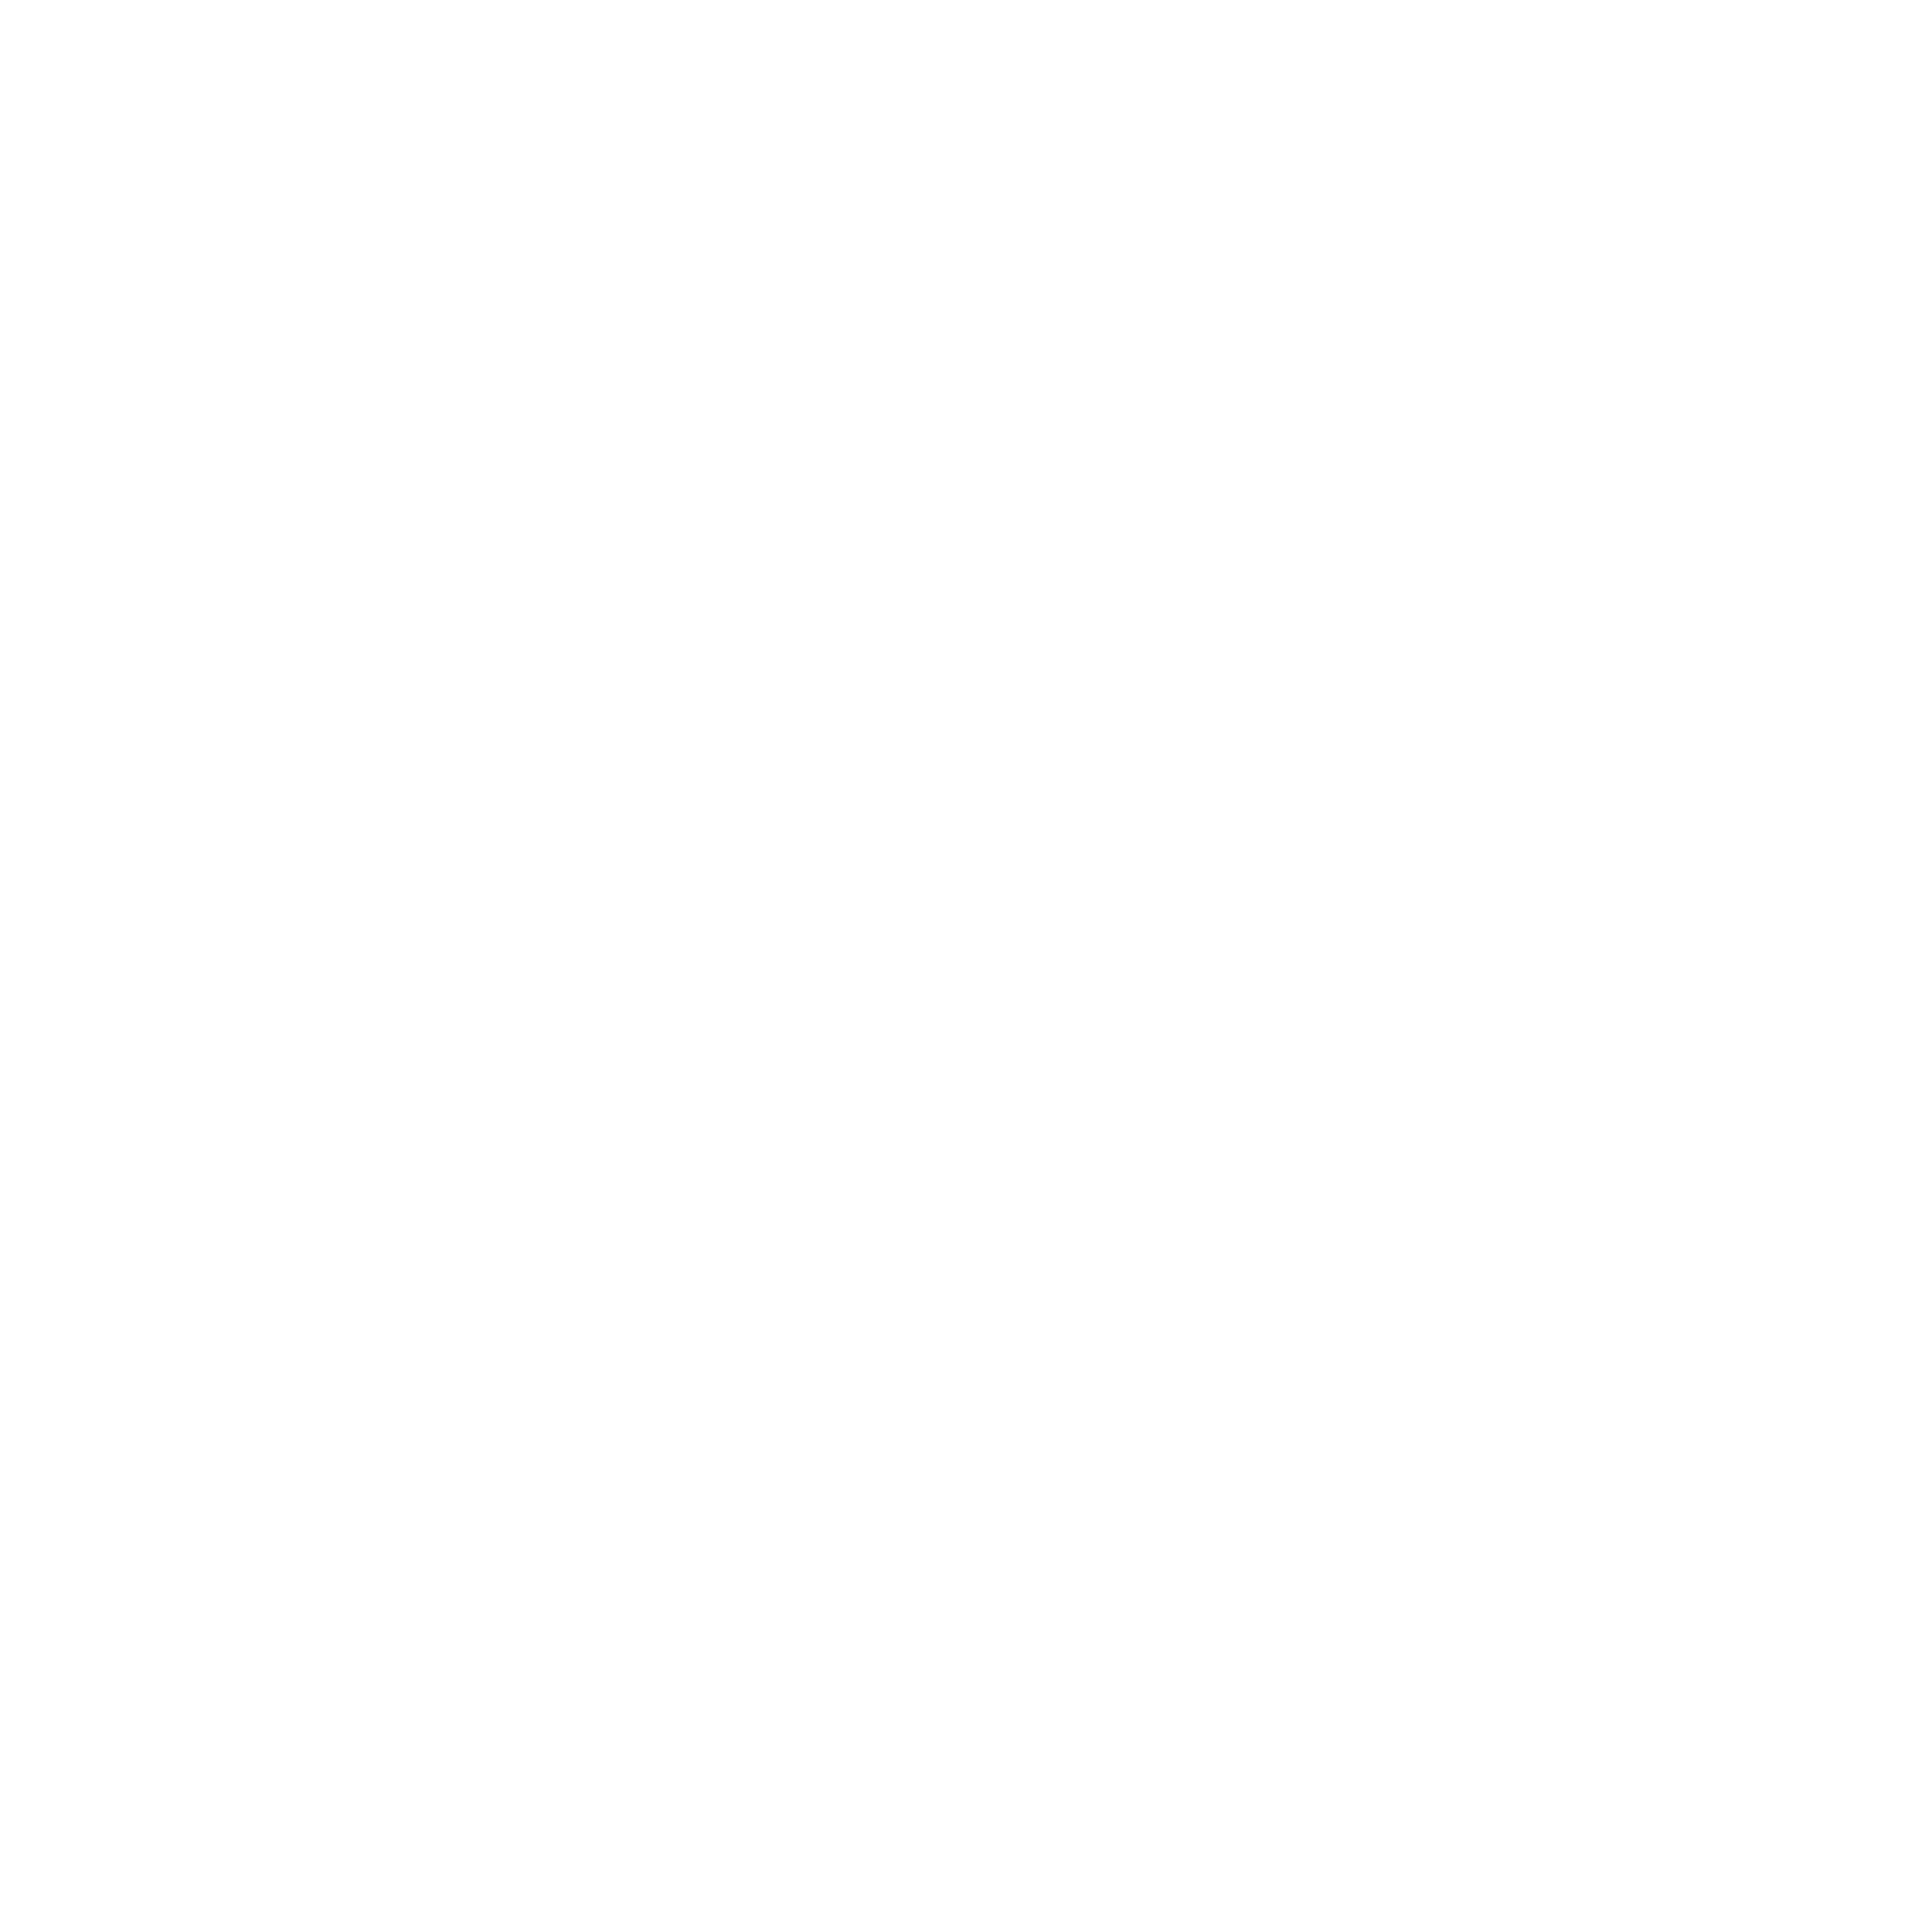 Coach USA Logo - Coach USA Logo PNG Transparent & SVG Vector - Freebie Supply